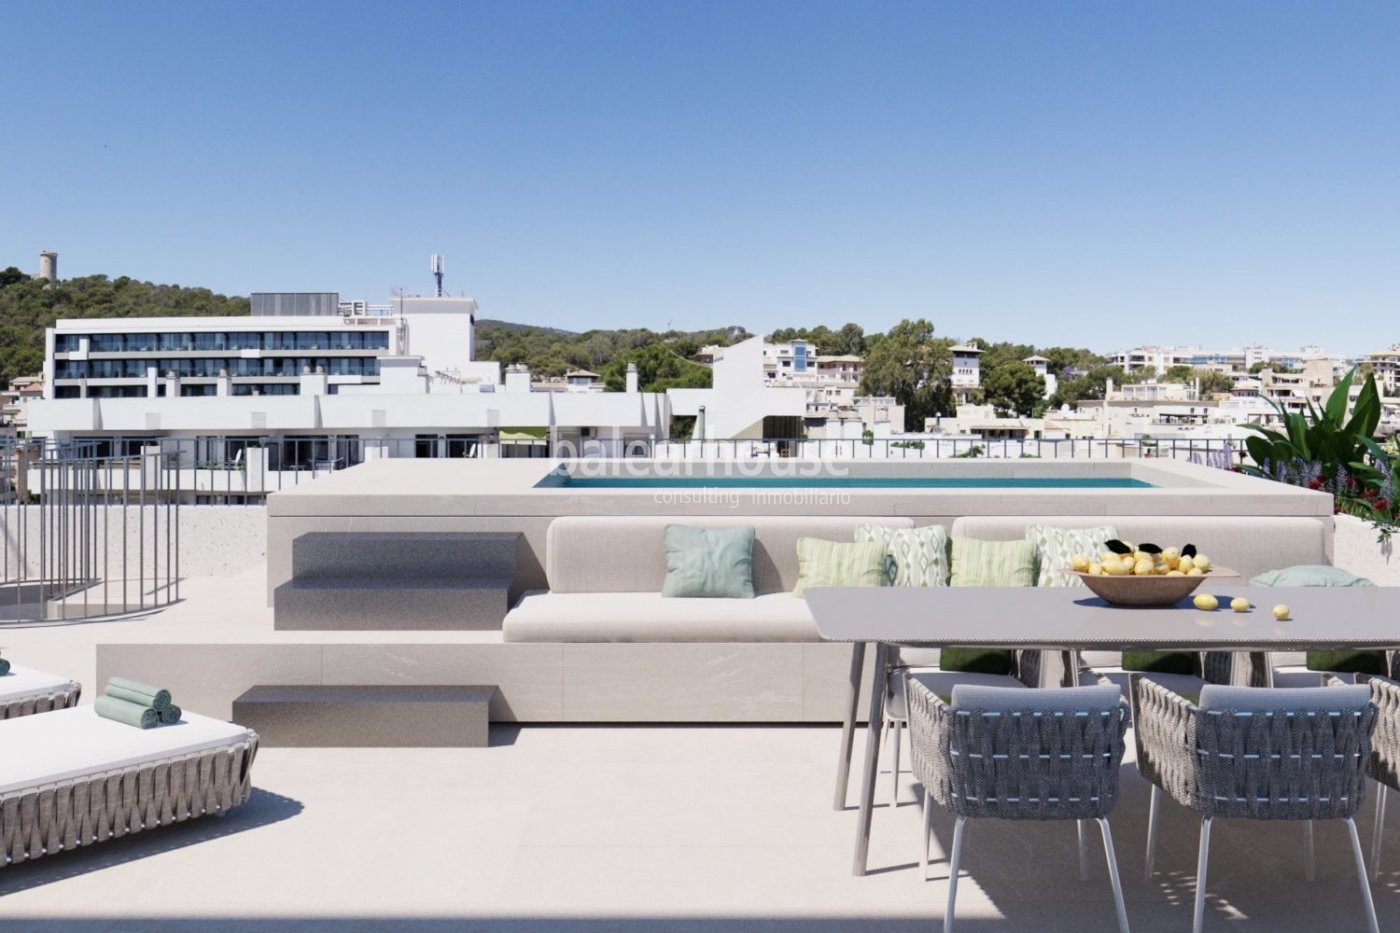 Wunderschönes neu gebautes Penthouse mit Pool und Solarium in der Gegend von Son Armadans in Palma.